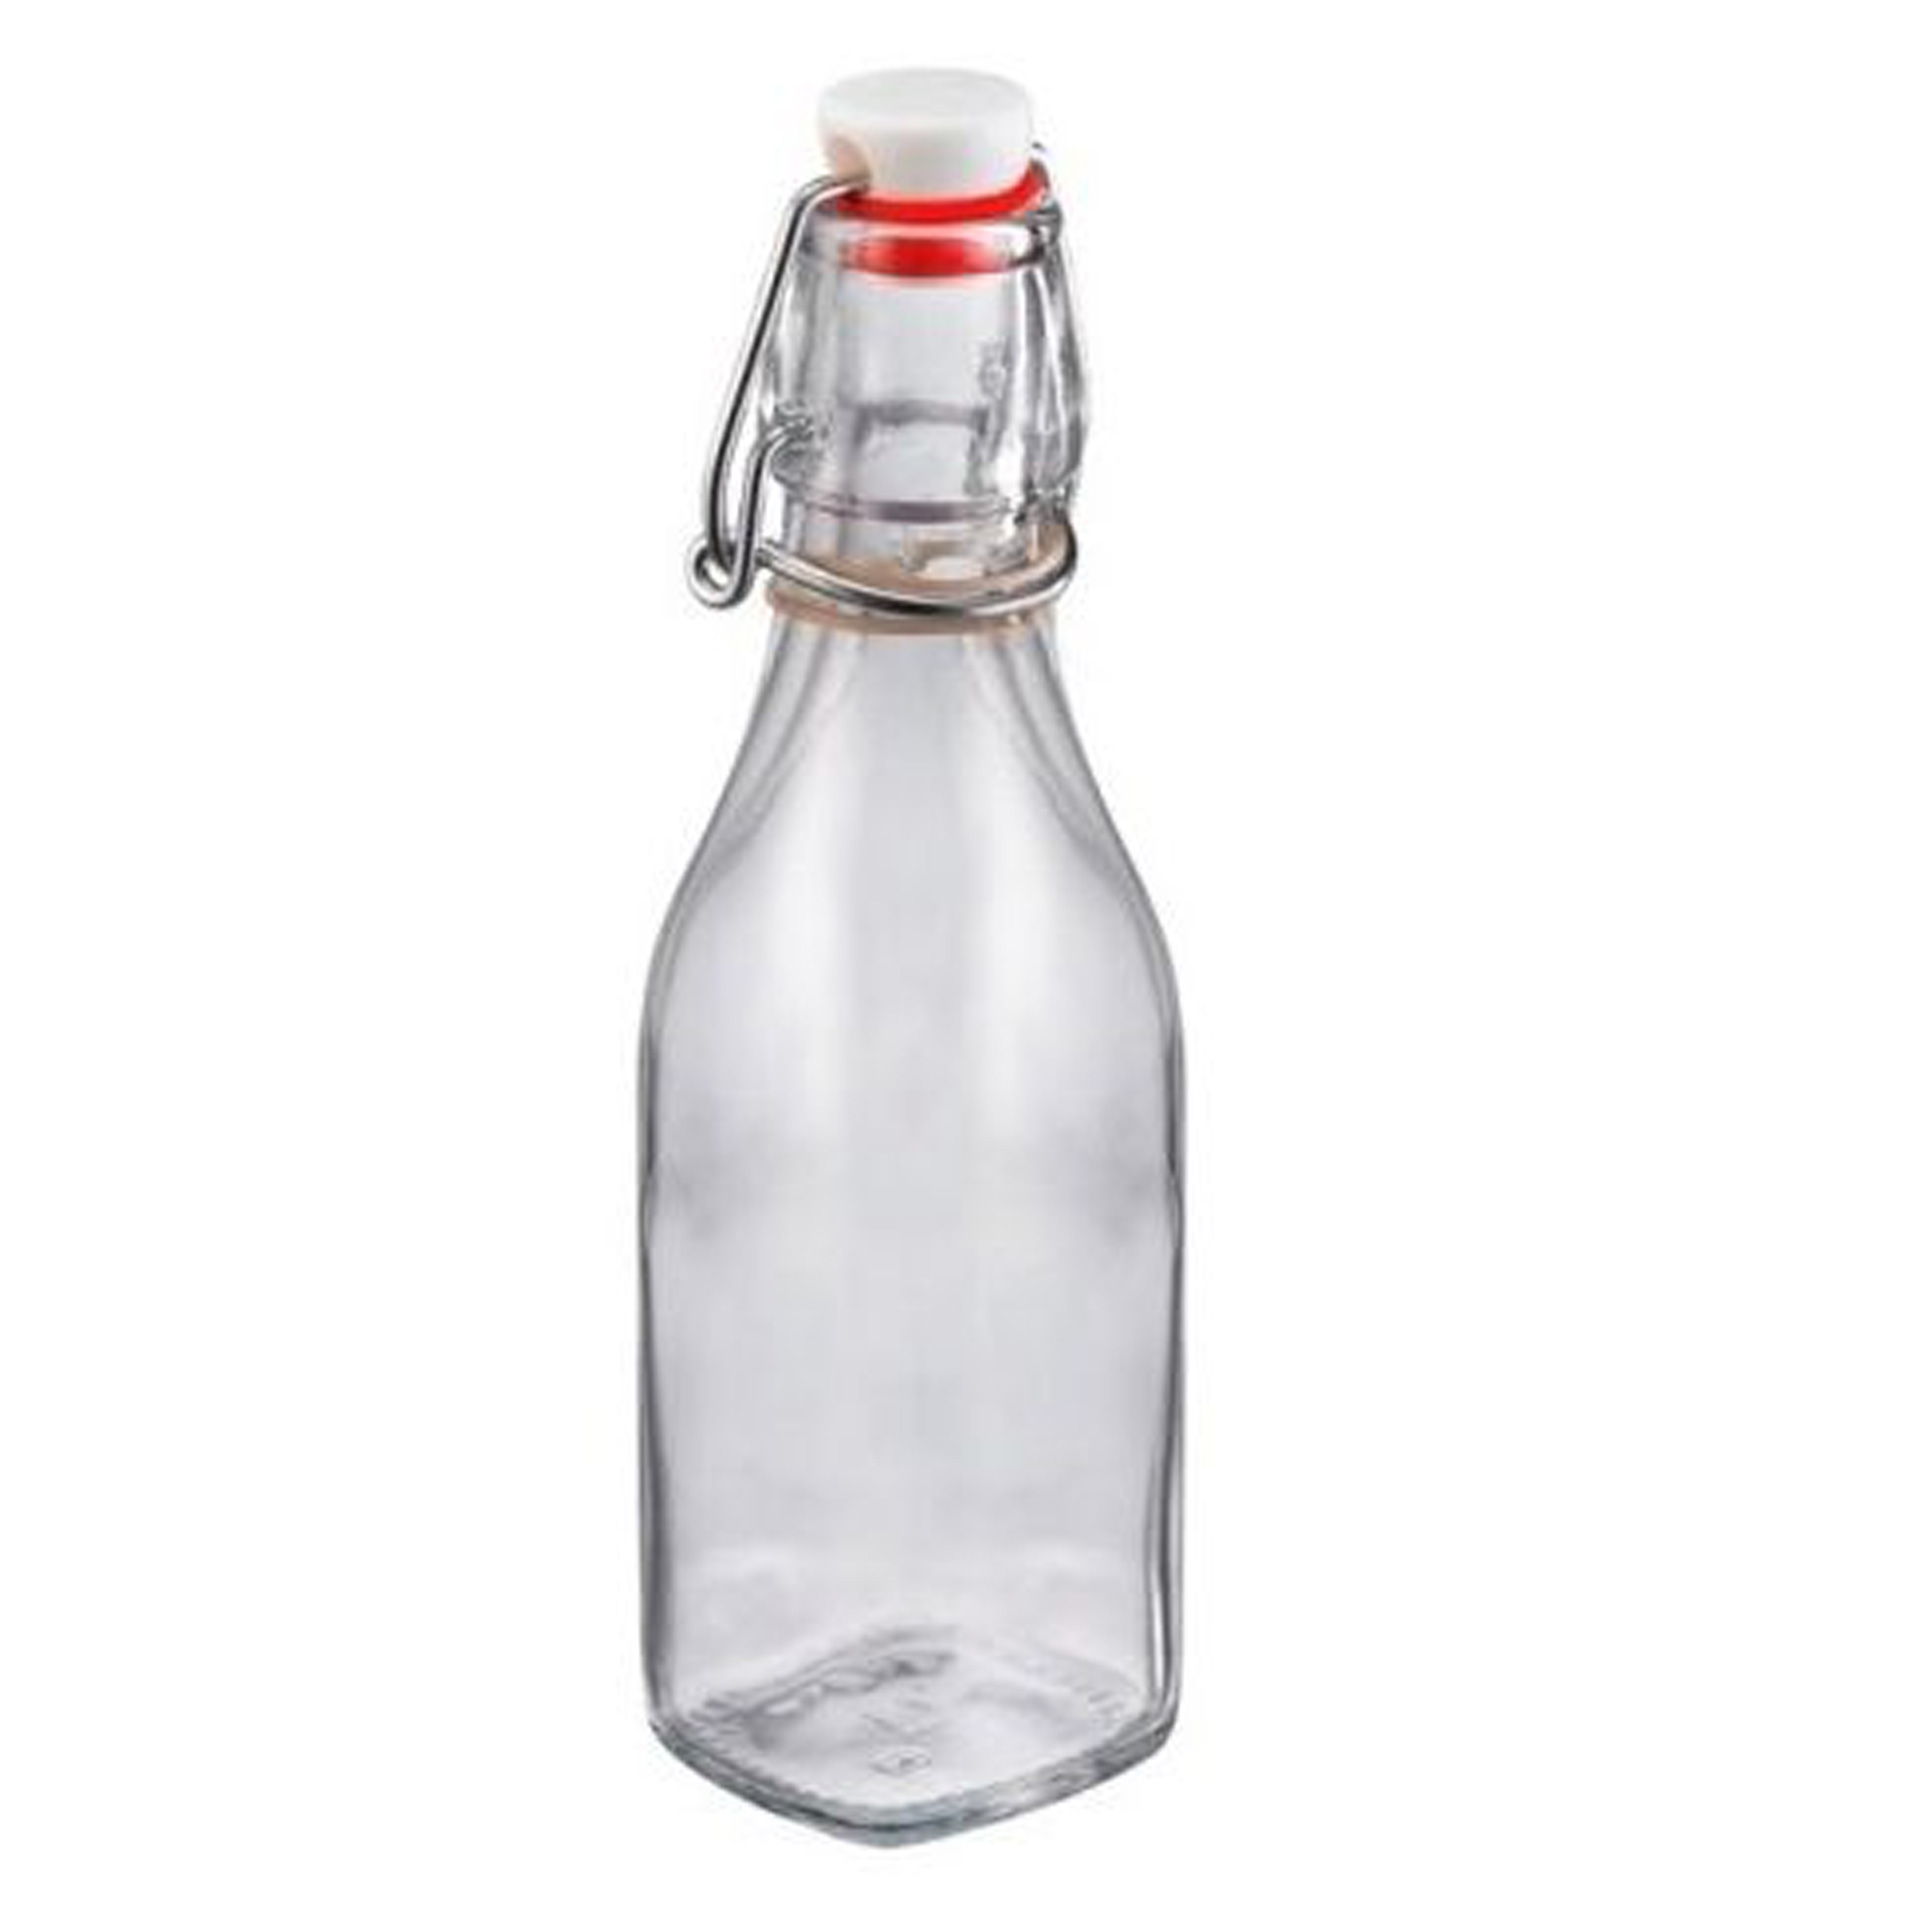 Butelka z hermetycznym zamknięciem 200 ml